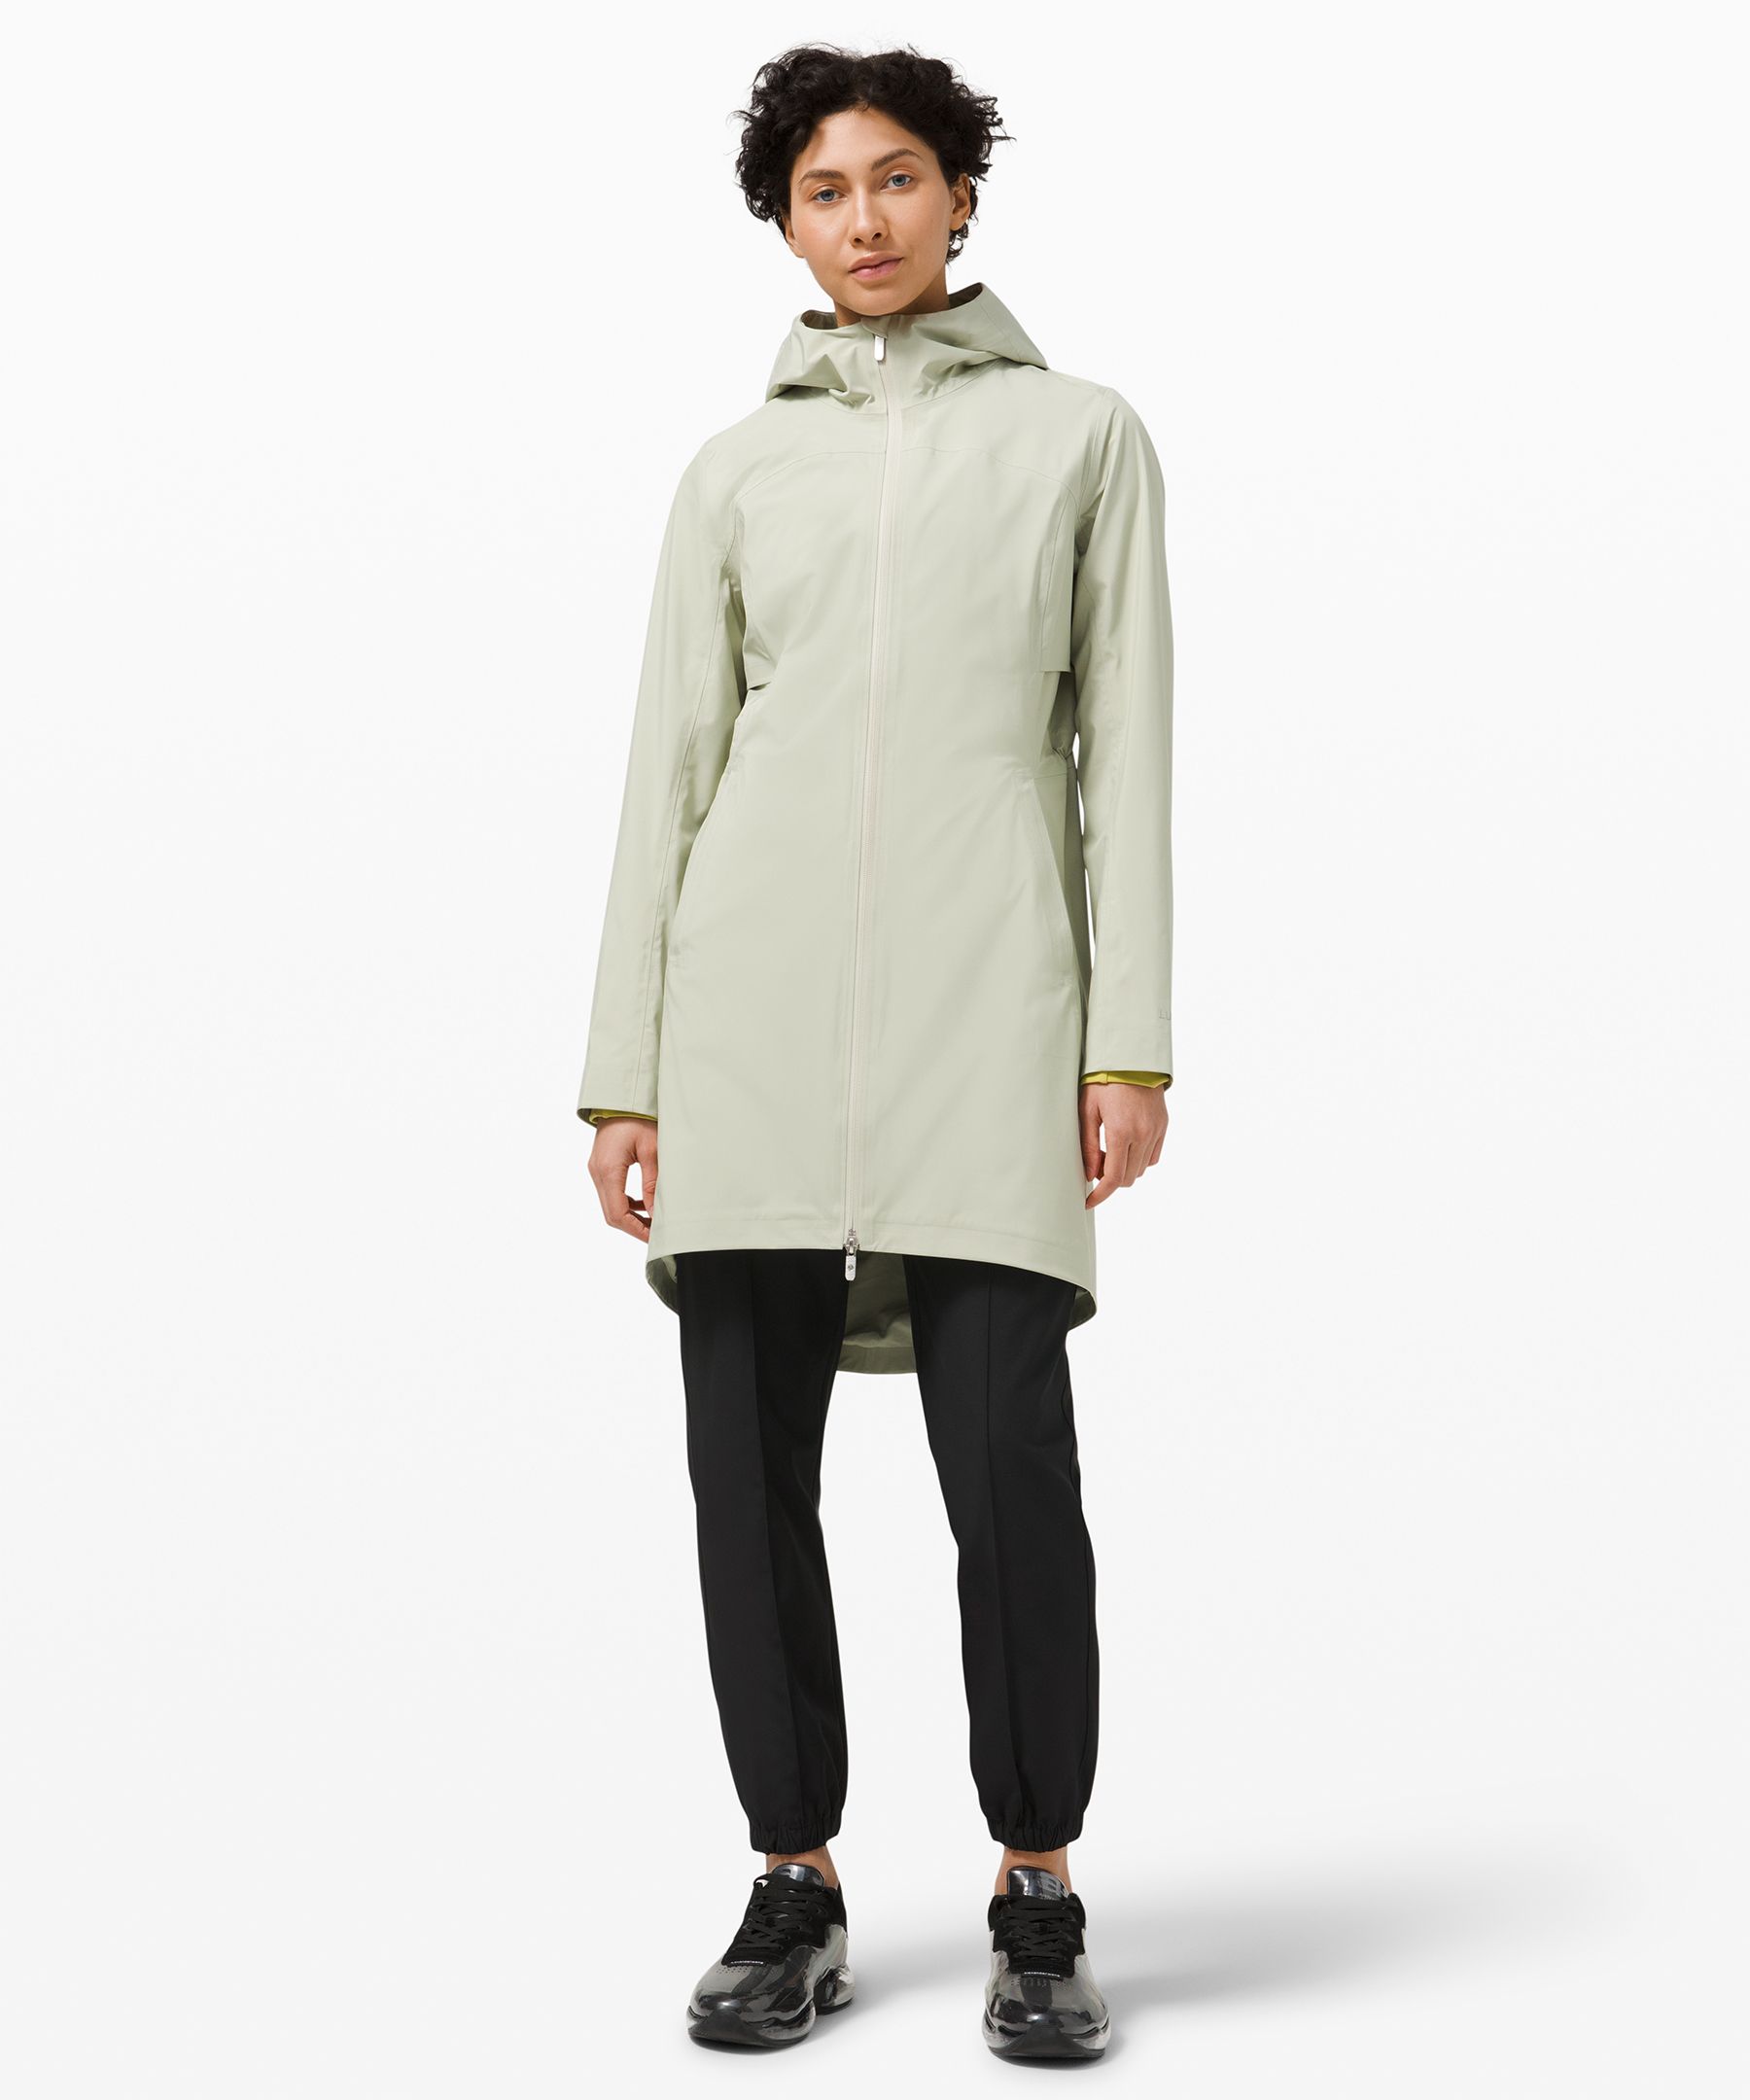 lululemon rain jacket australia